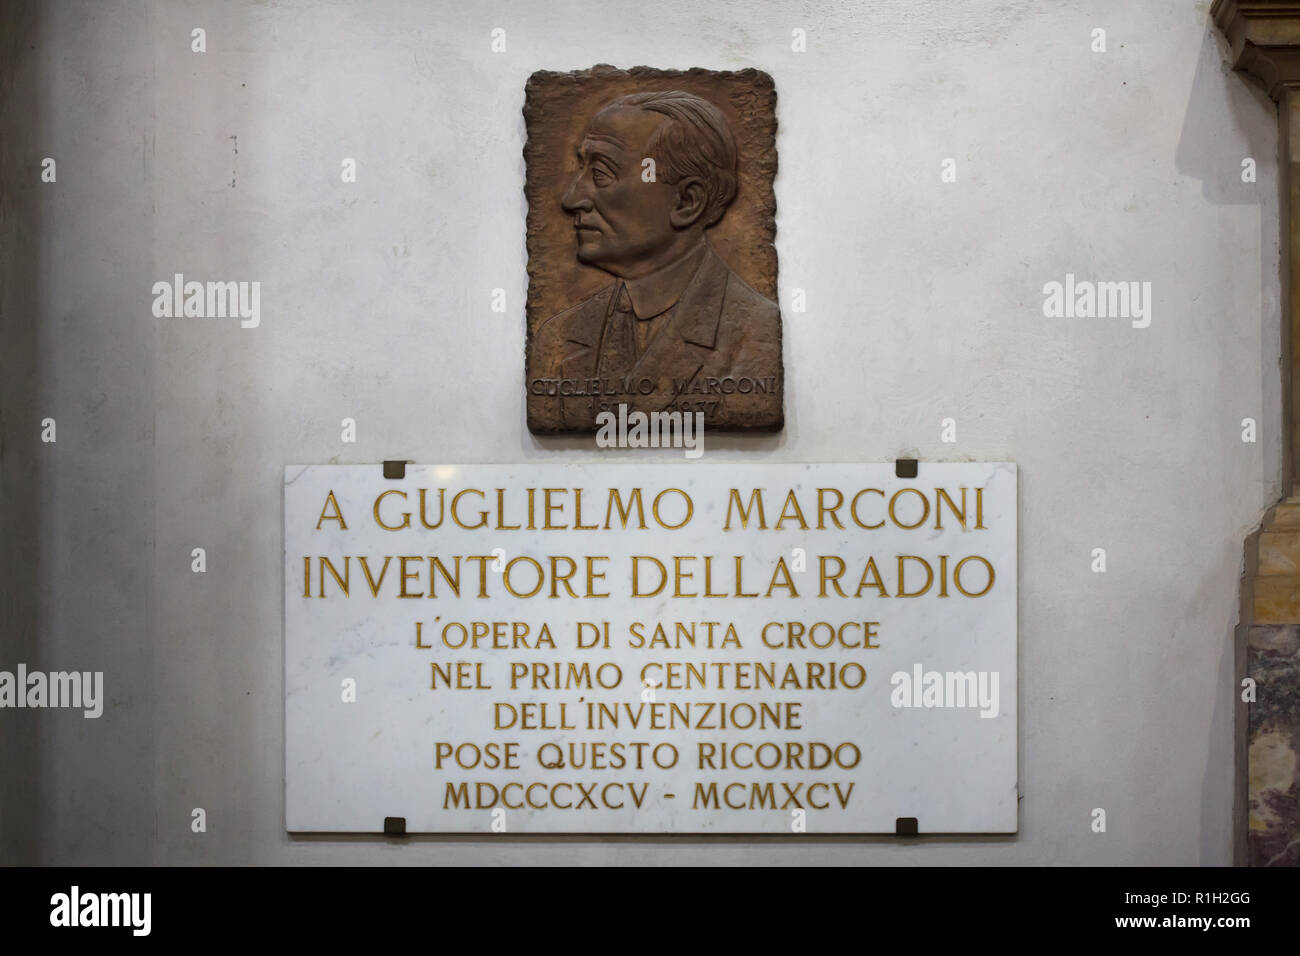 Plaque à commémorer l'inventeur italien Guglielmo Marconi et électriciens, connu comme l'inventeur de la radio, dans la basilique Santa Croce (Basilique de la Sainte Croix) de Florence, Toscane, Italie. La plaque commémorative du centenaire de la radio a été installé en 1995. Banque D'Images